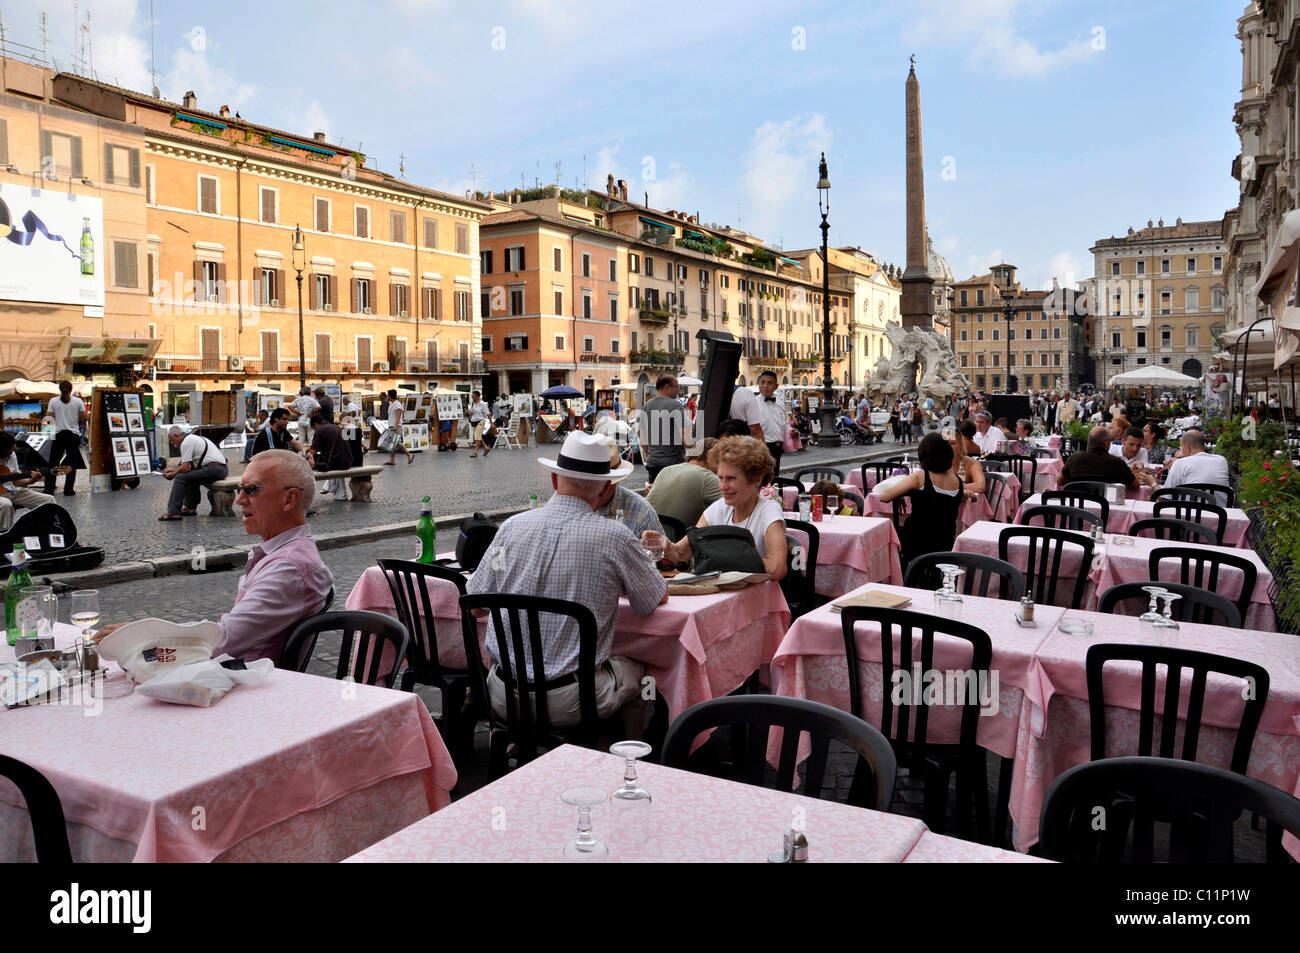 Restaurant, Ristorante, Piazza Navona square, Rome, Lazio, Italy, Europe Stock Photo